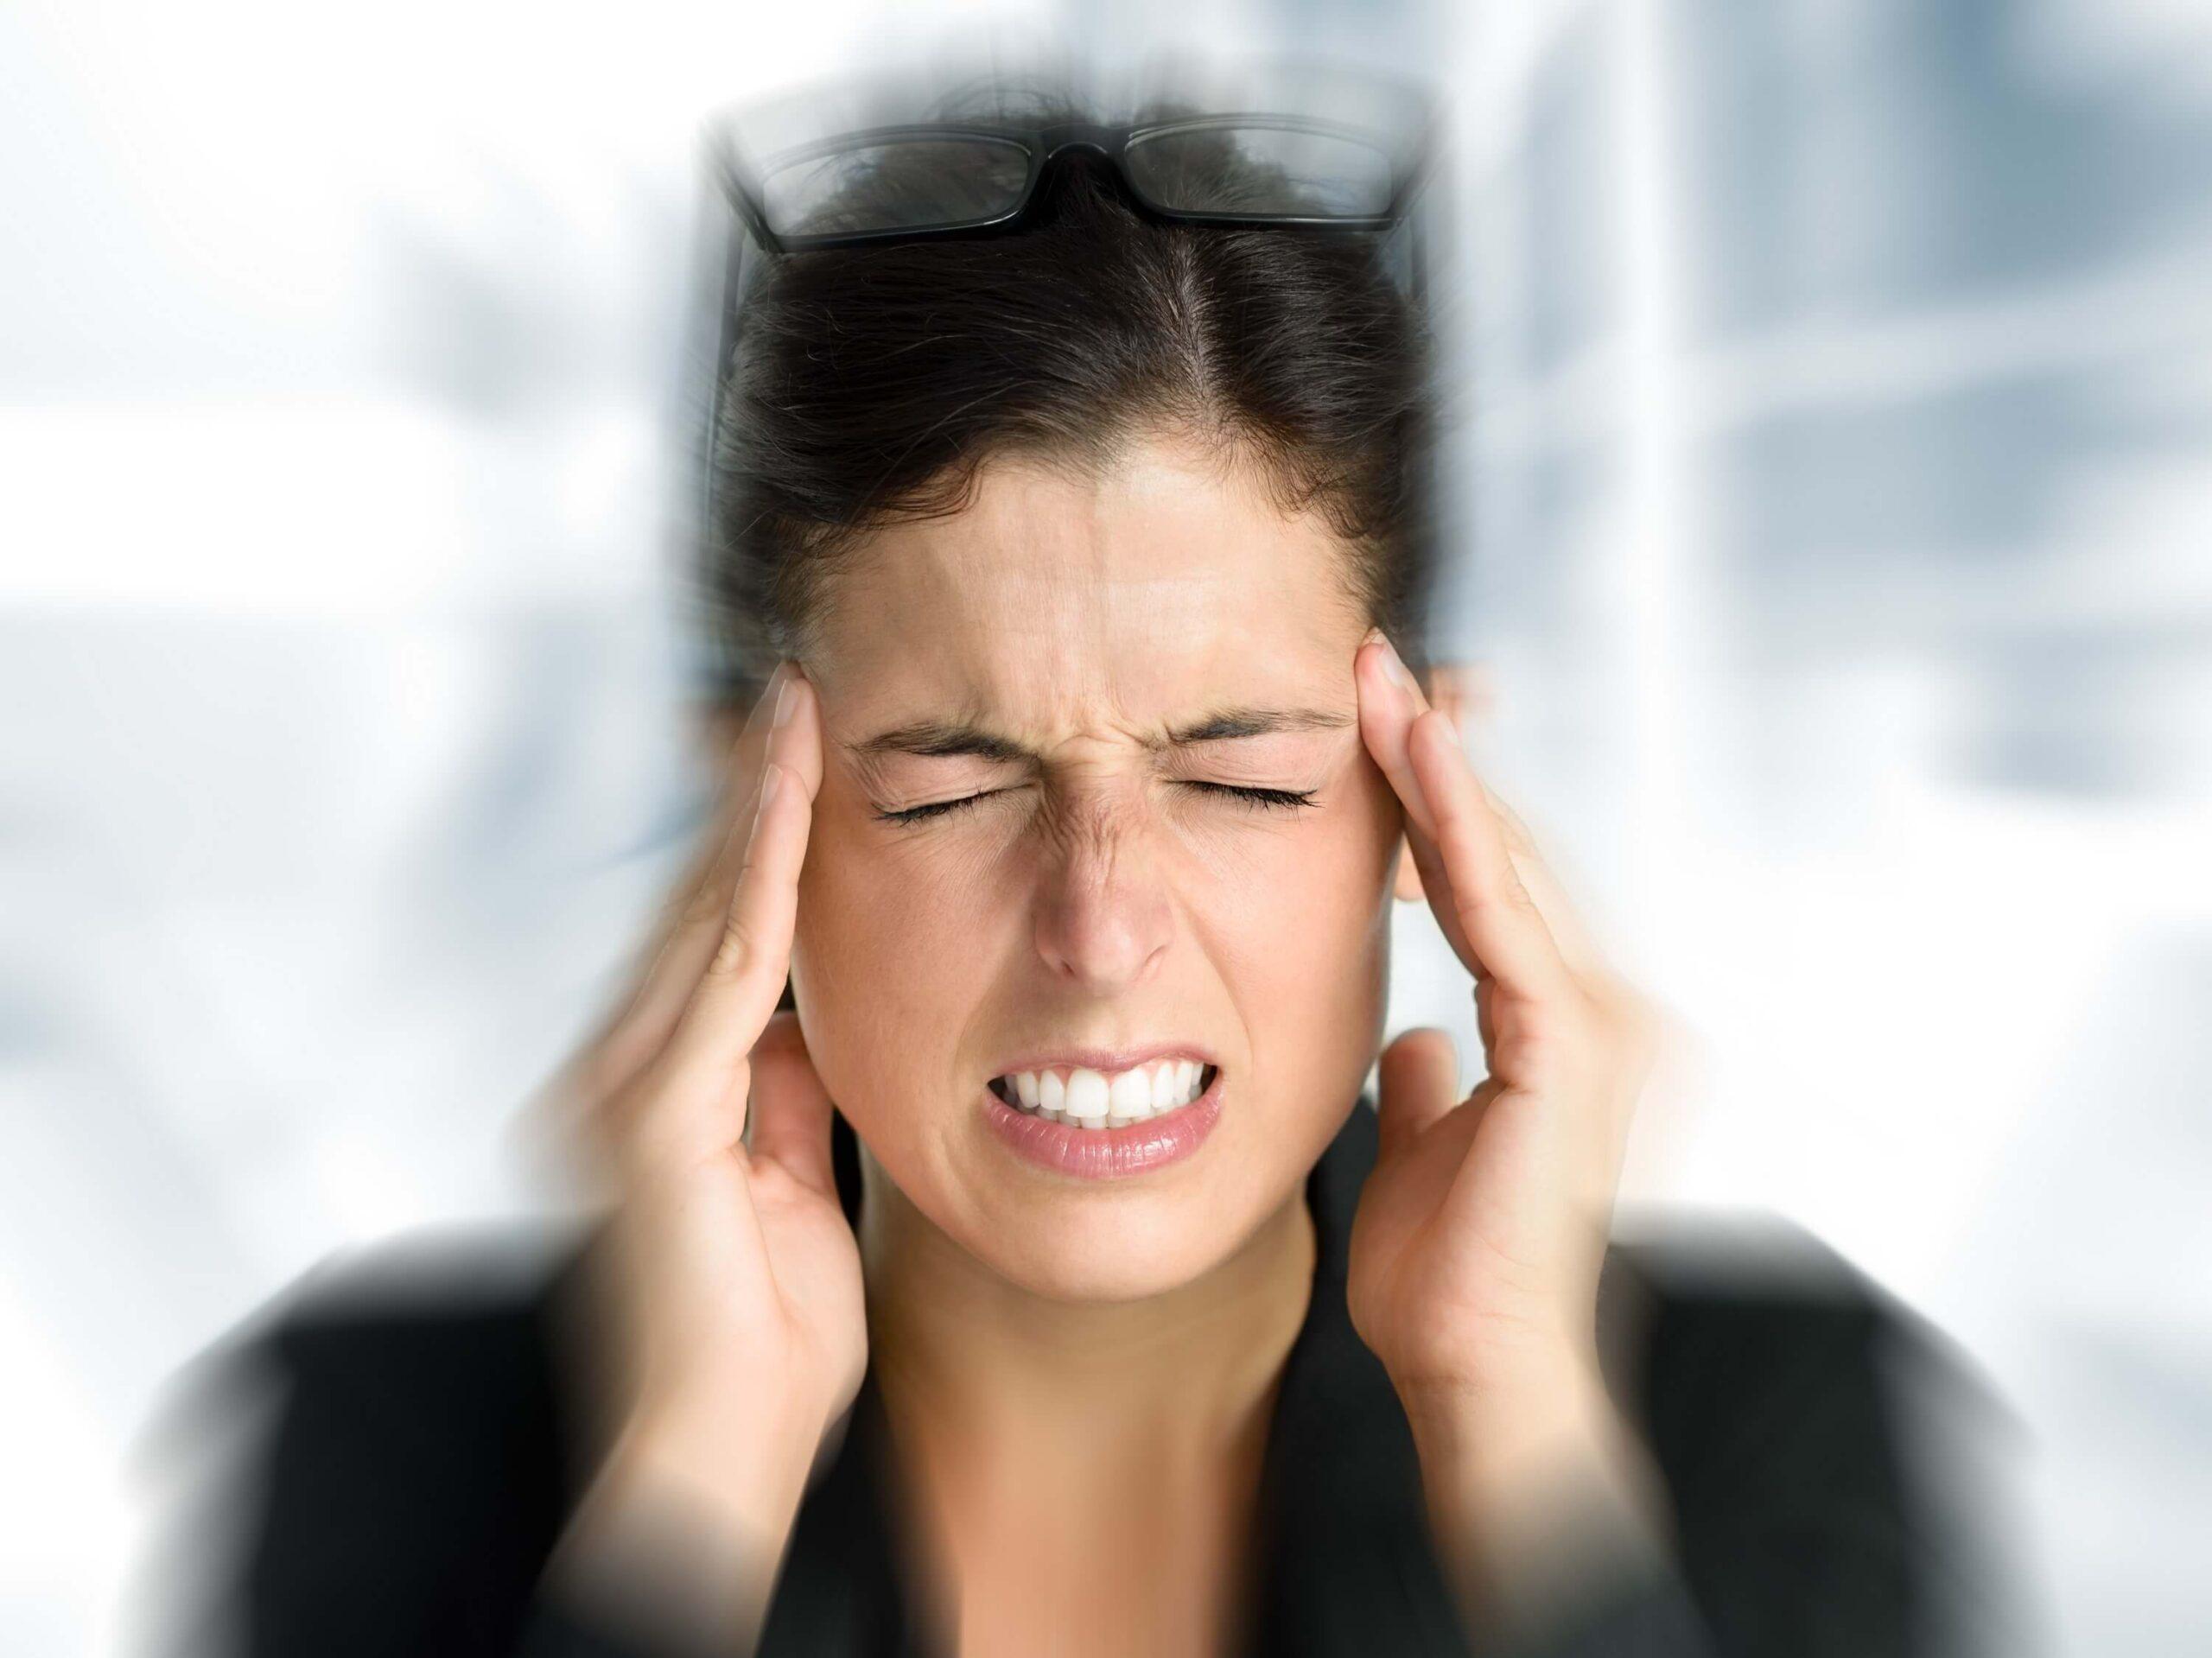 Hypnose gegen Migräne